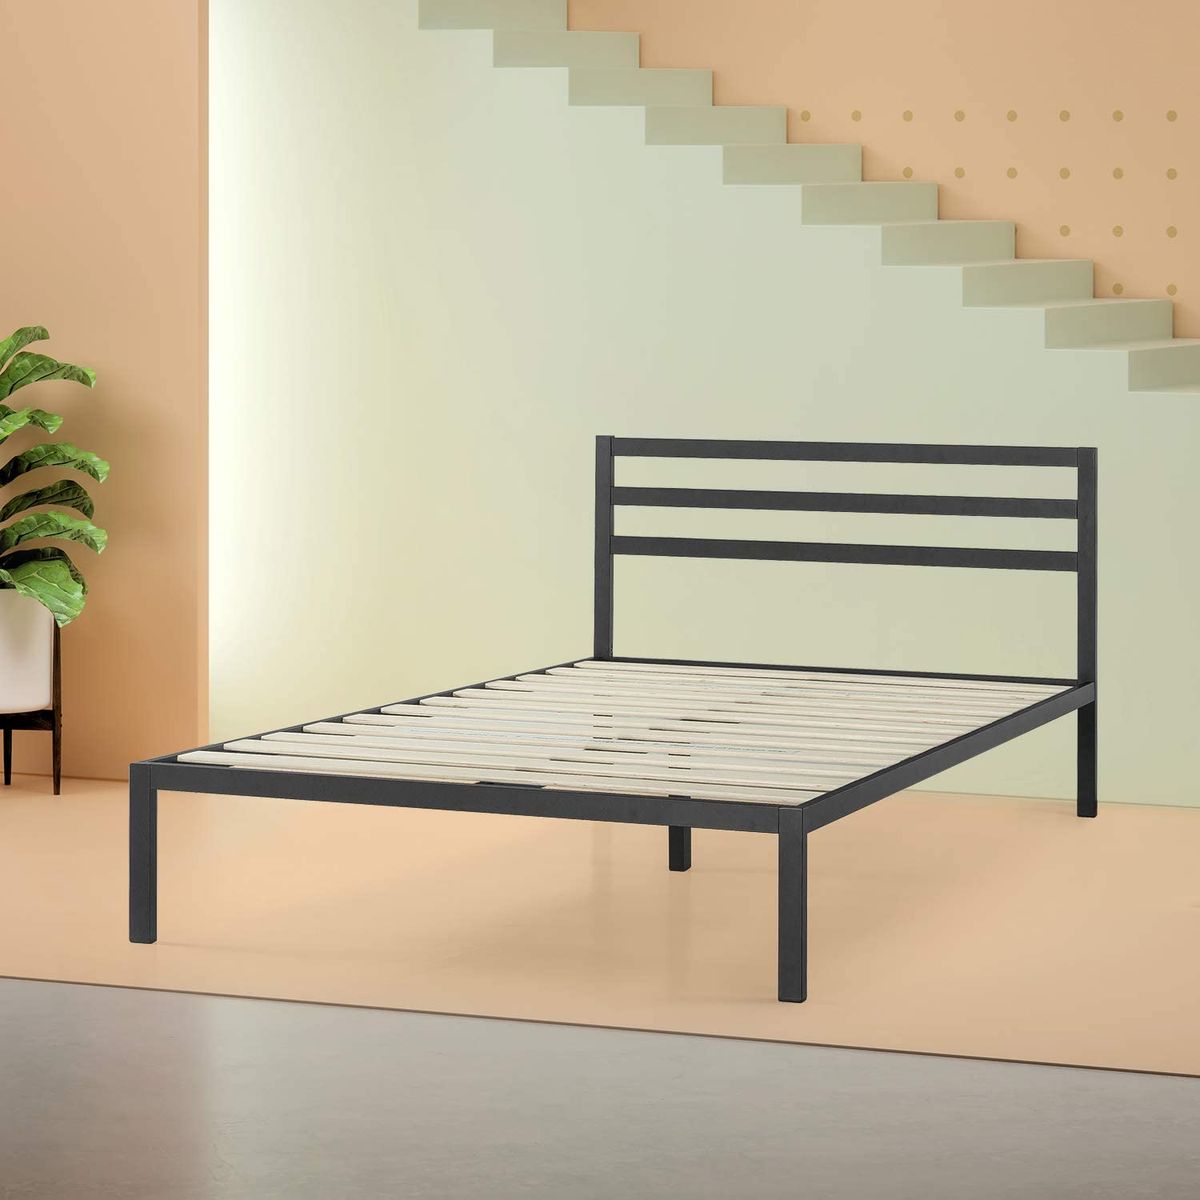 19 Best Metal Bed Frames 2020 The, Tubular Bed Frame Design